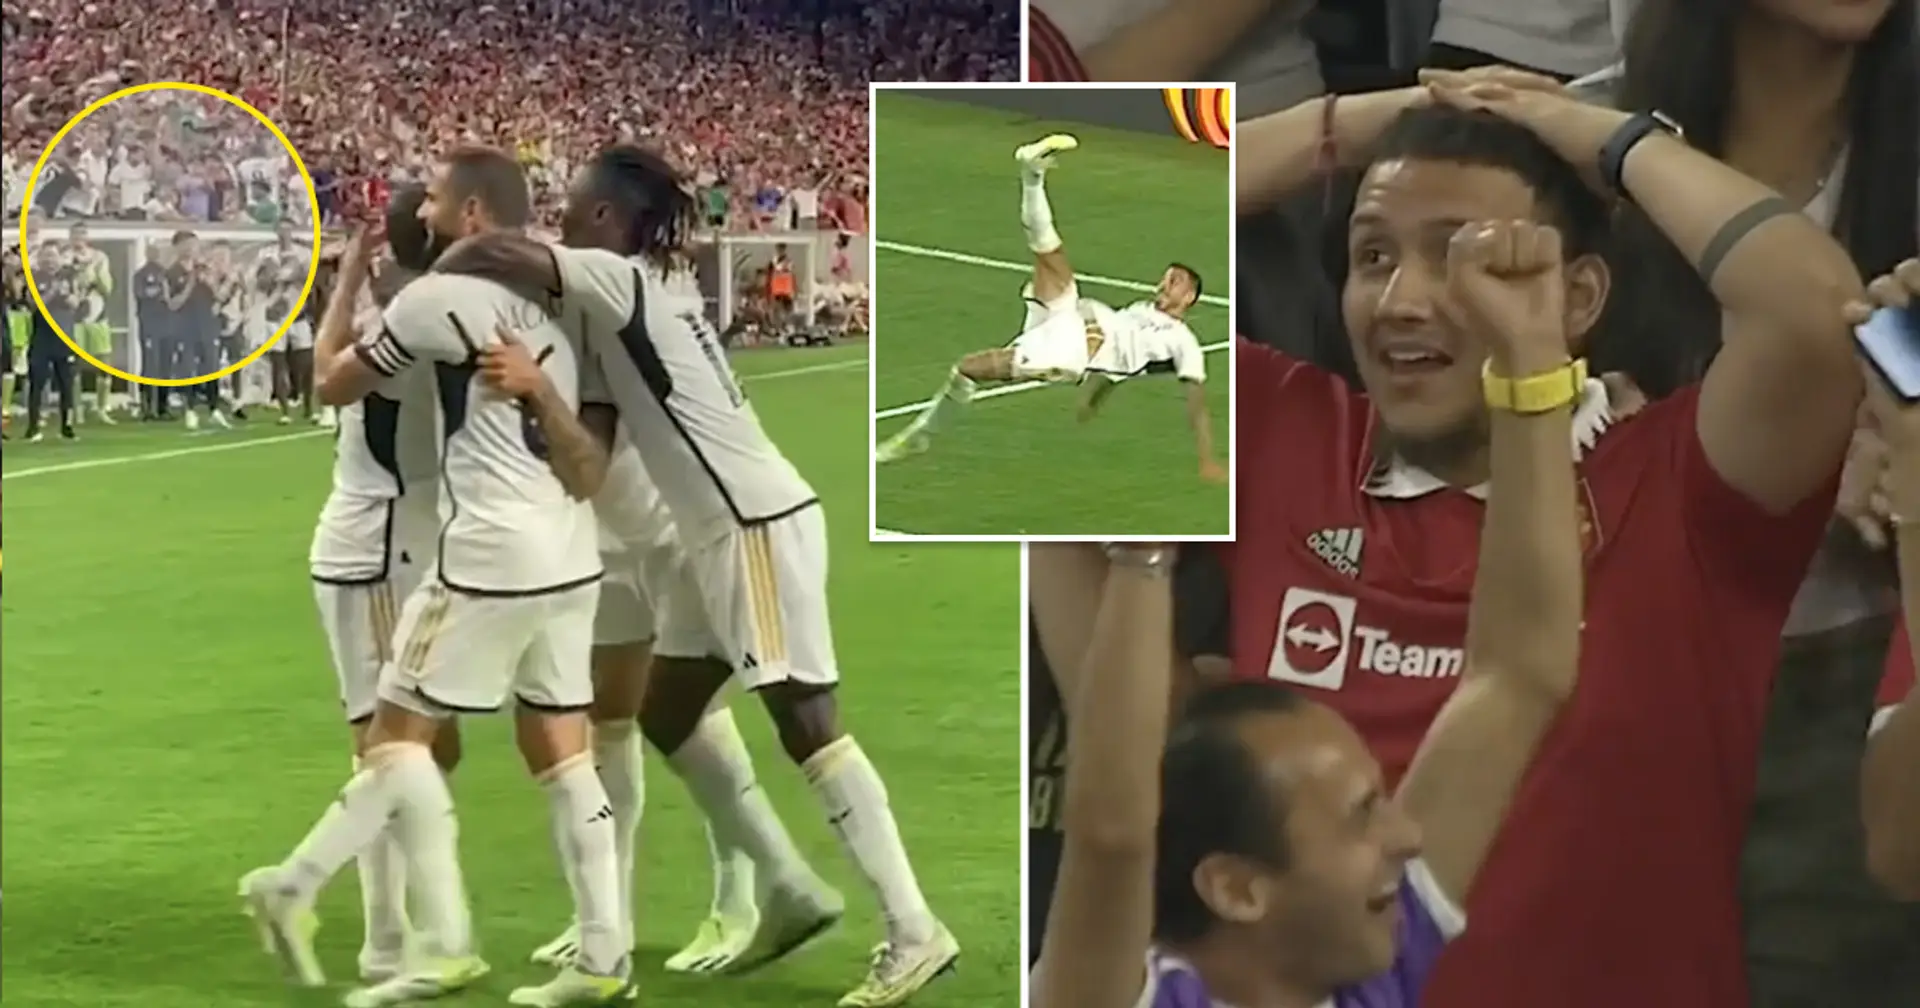 La reacción del banquillo del Real Madrid y de la afición al golazo de Joselu vs Man United captadas en cámara